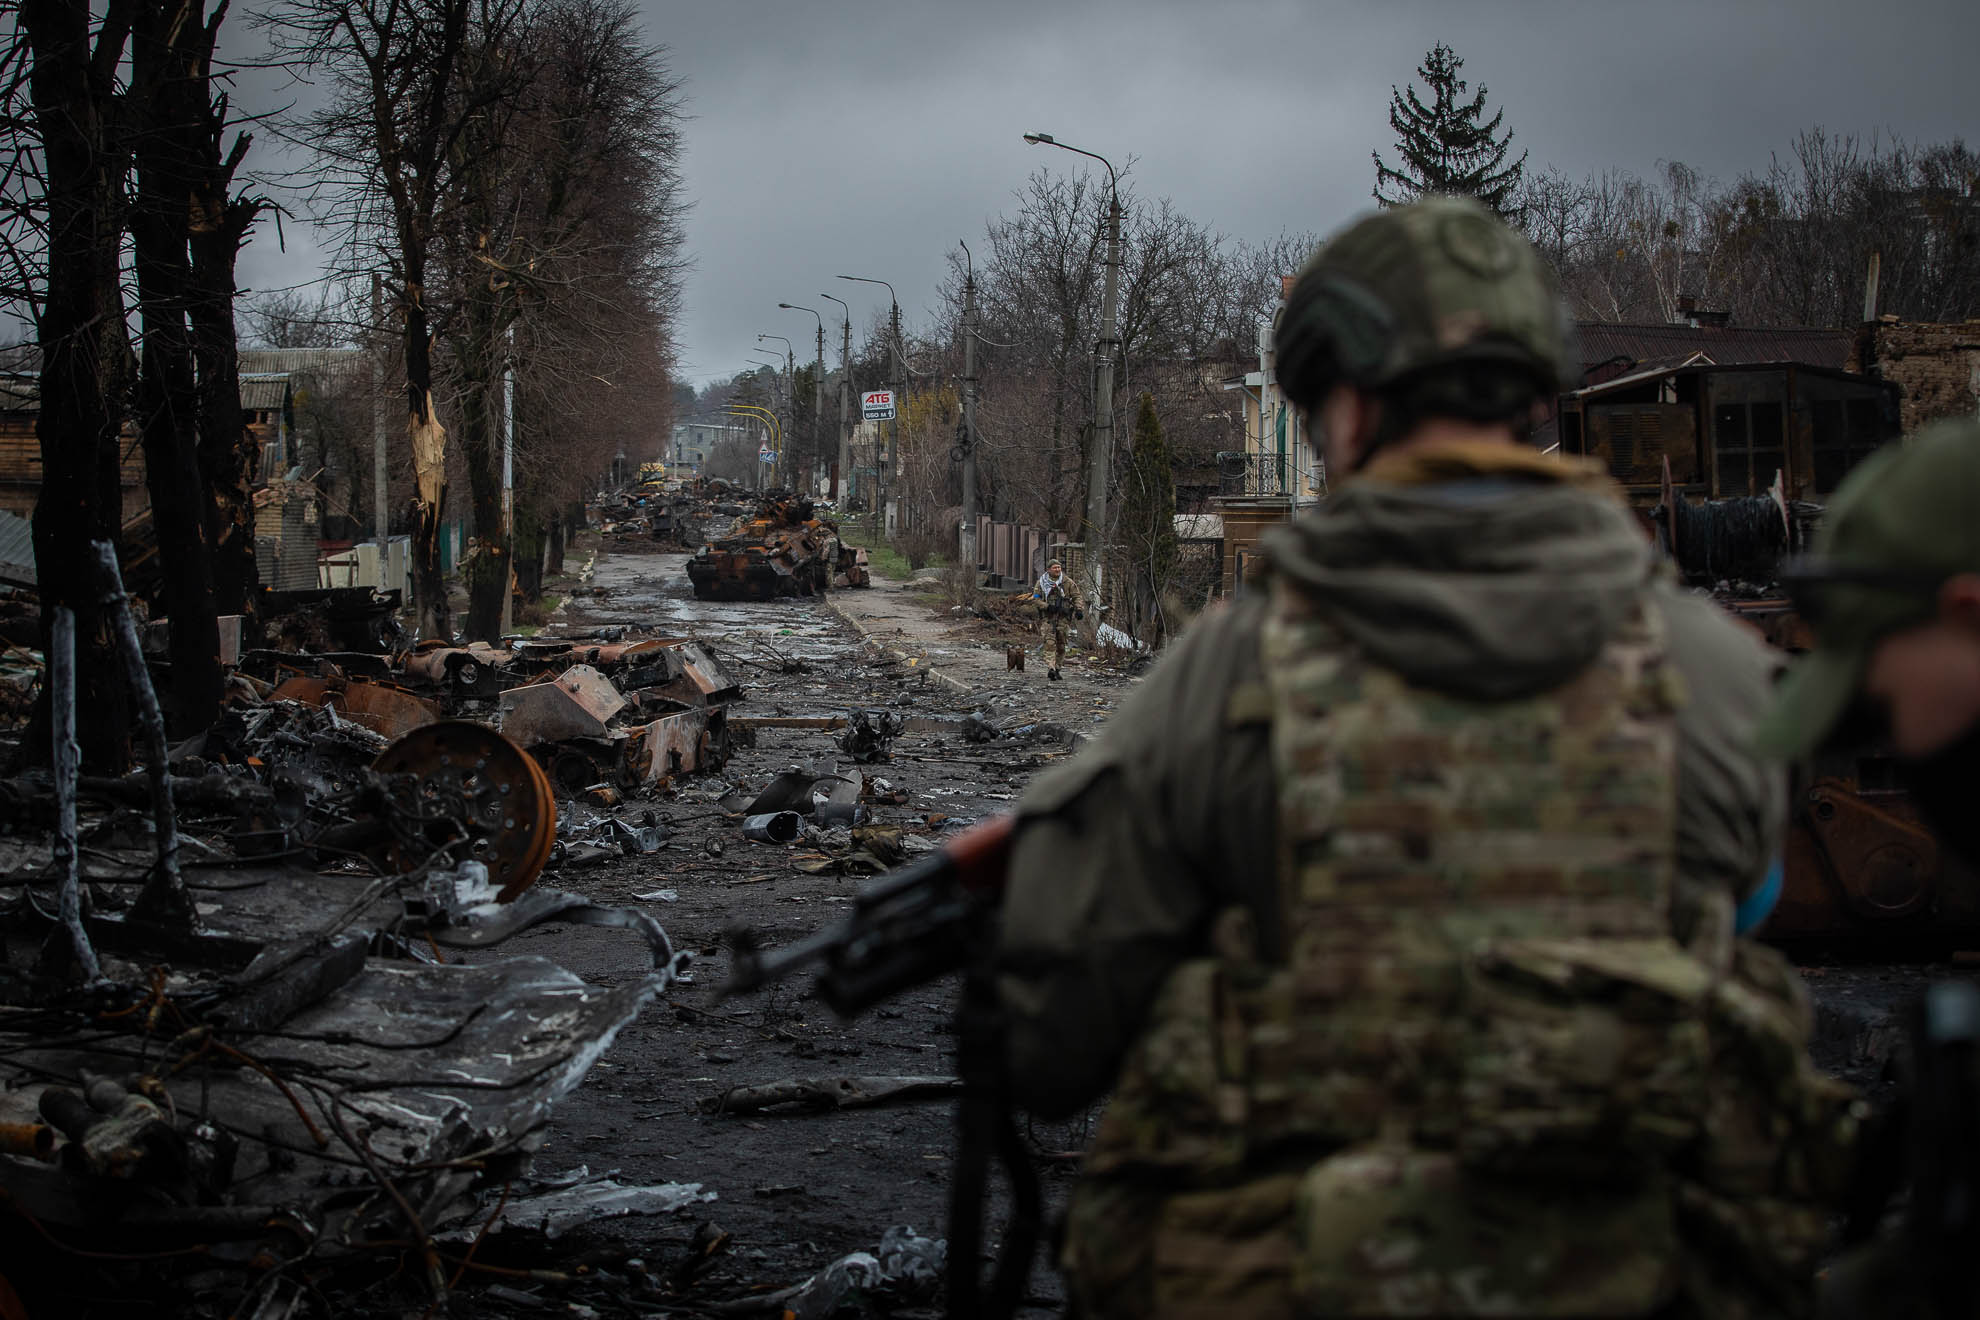 Una columna de tanques fue atacada en una ofensiva de las tropas ucranianas en la calle Vokzalna. El sábado 2 de abril, soldados ucranianos caminaban entre los restos de tanques rusos, fotografiando e inspeccionándolo todo. Muchas de las casas alrededor de los tanques estaban destruidas.